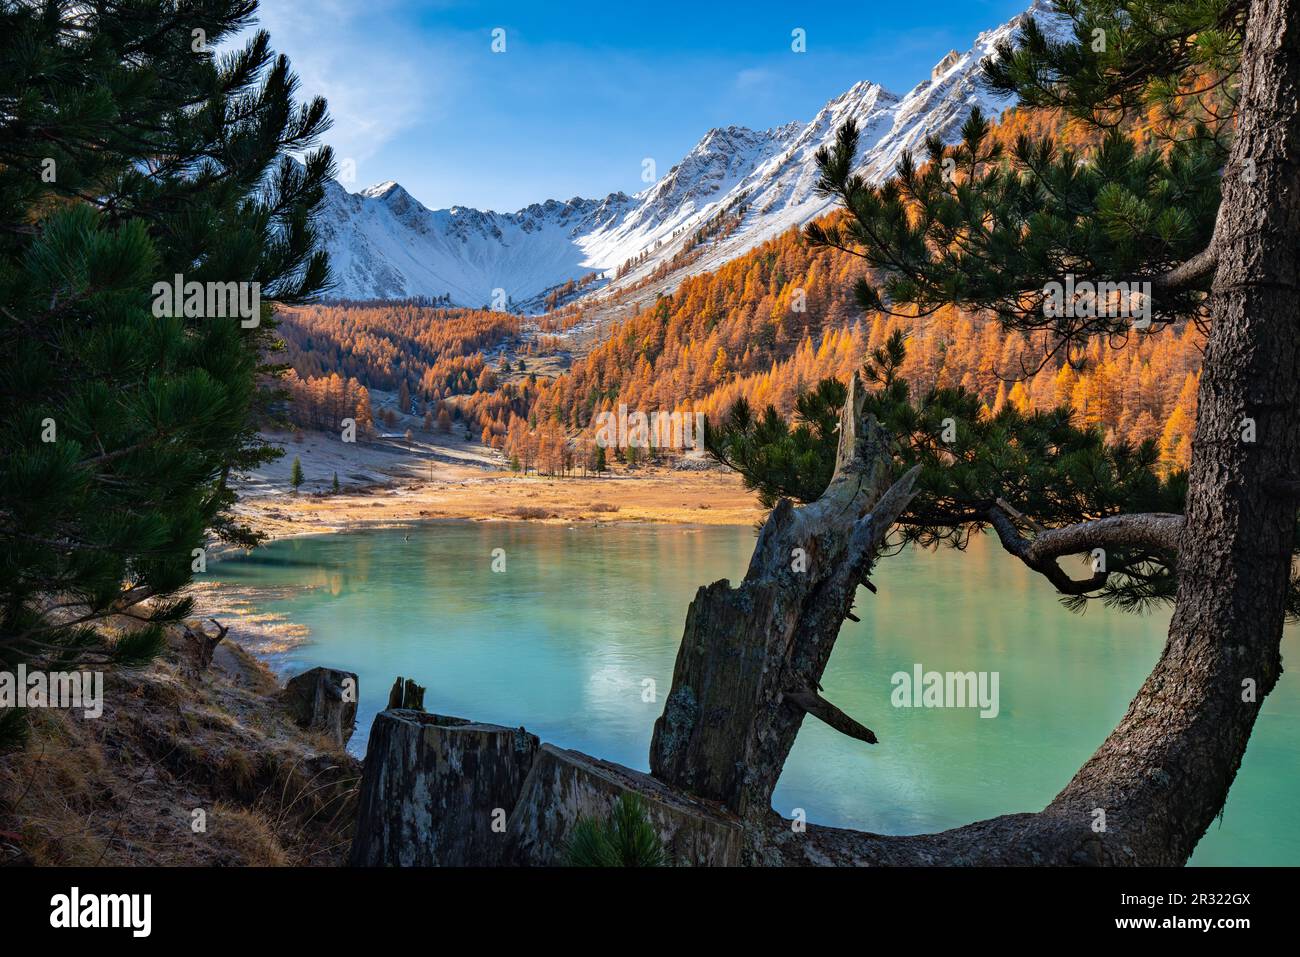 Lac Orceyrette en automne avec mélèze doré et sommets enneigés. Région de Briançon dans les Hautes-Alpes (Alpes françaises). France Banque D'Images